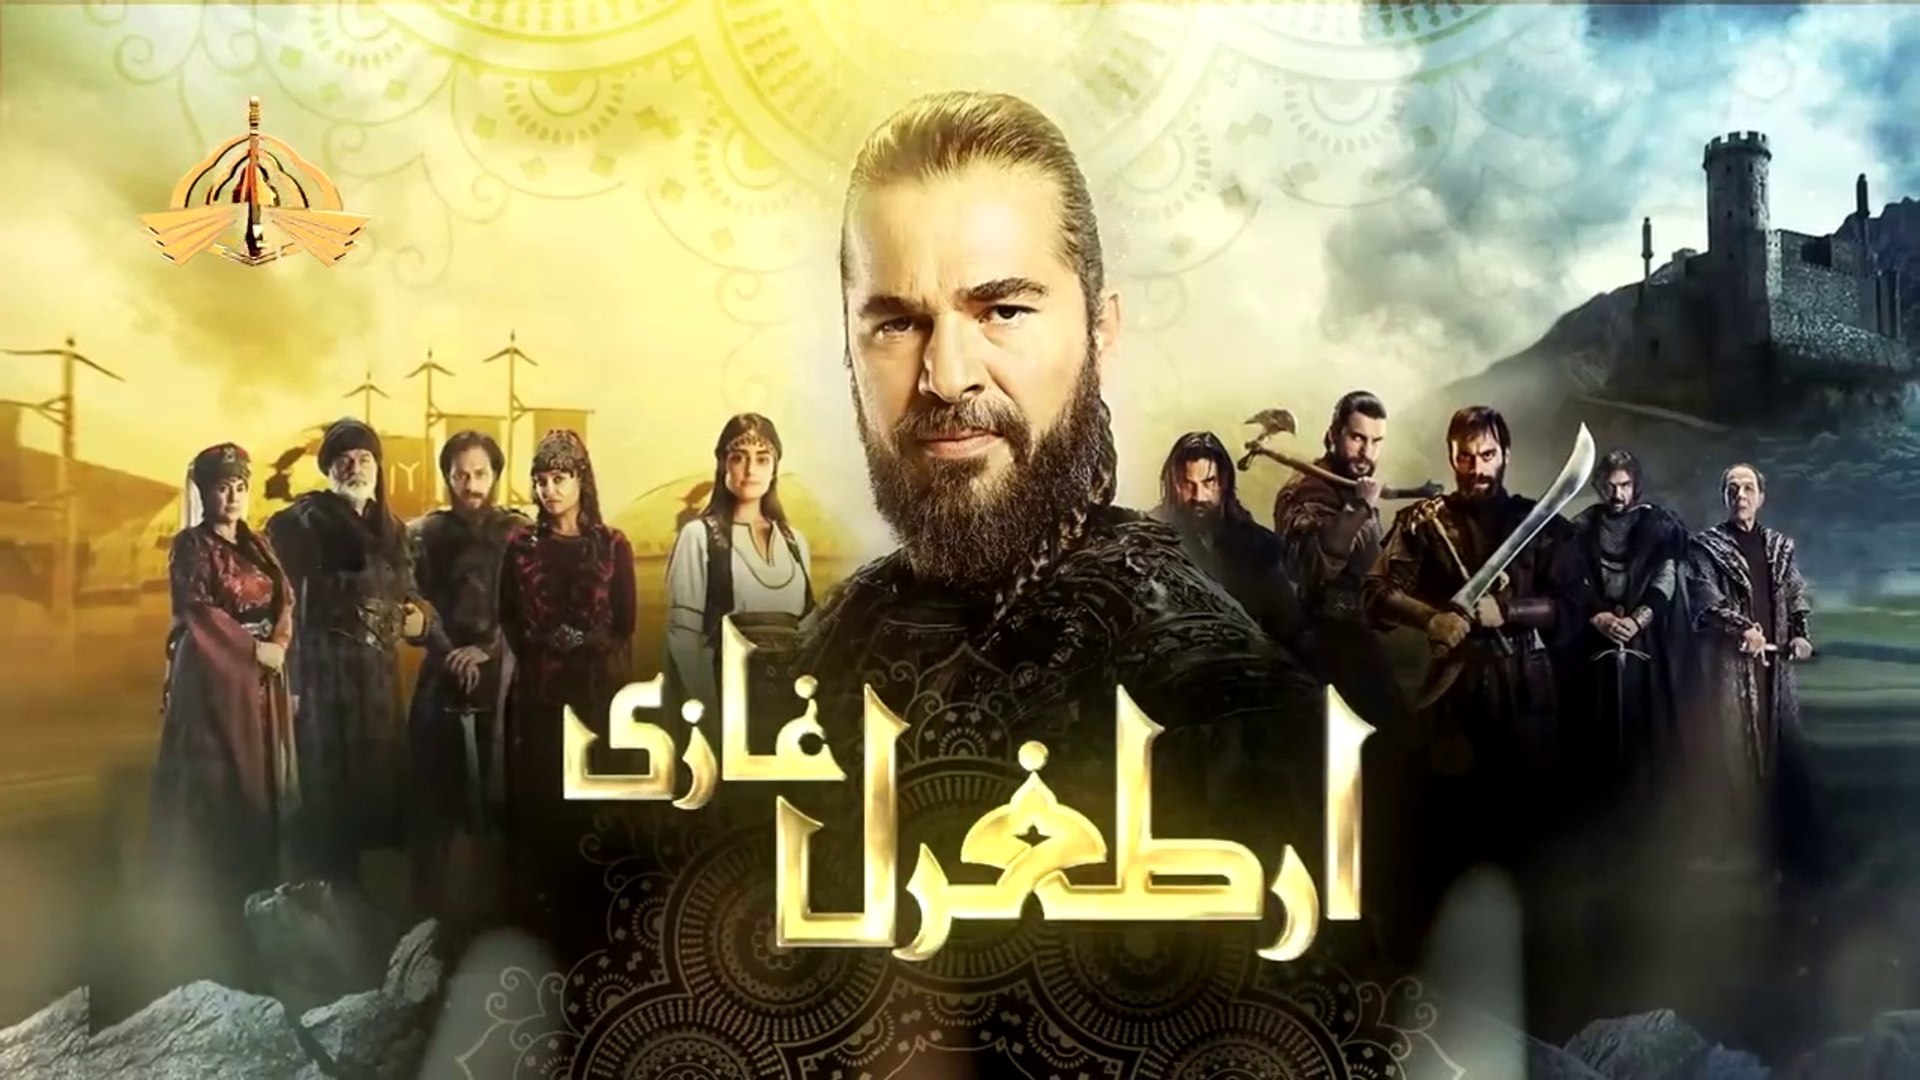 Ertugrul Ghazi Season 1 Episode 1 In Urdu/Hindi dubbed HD - video ...